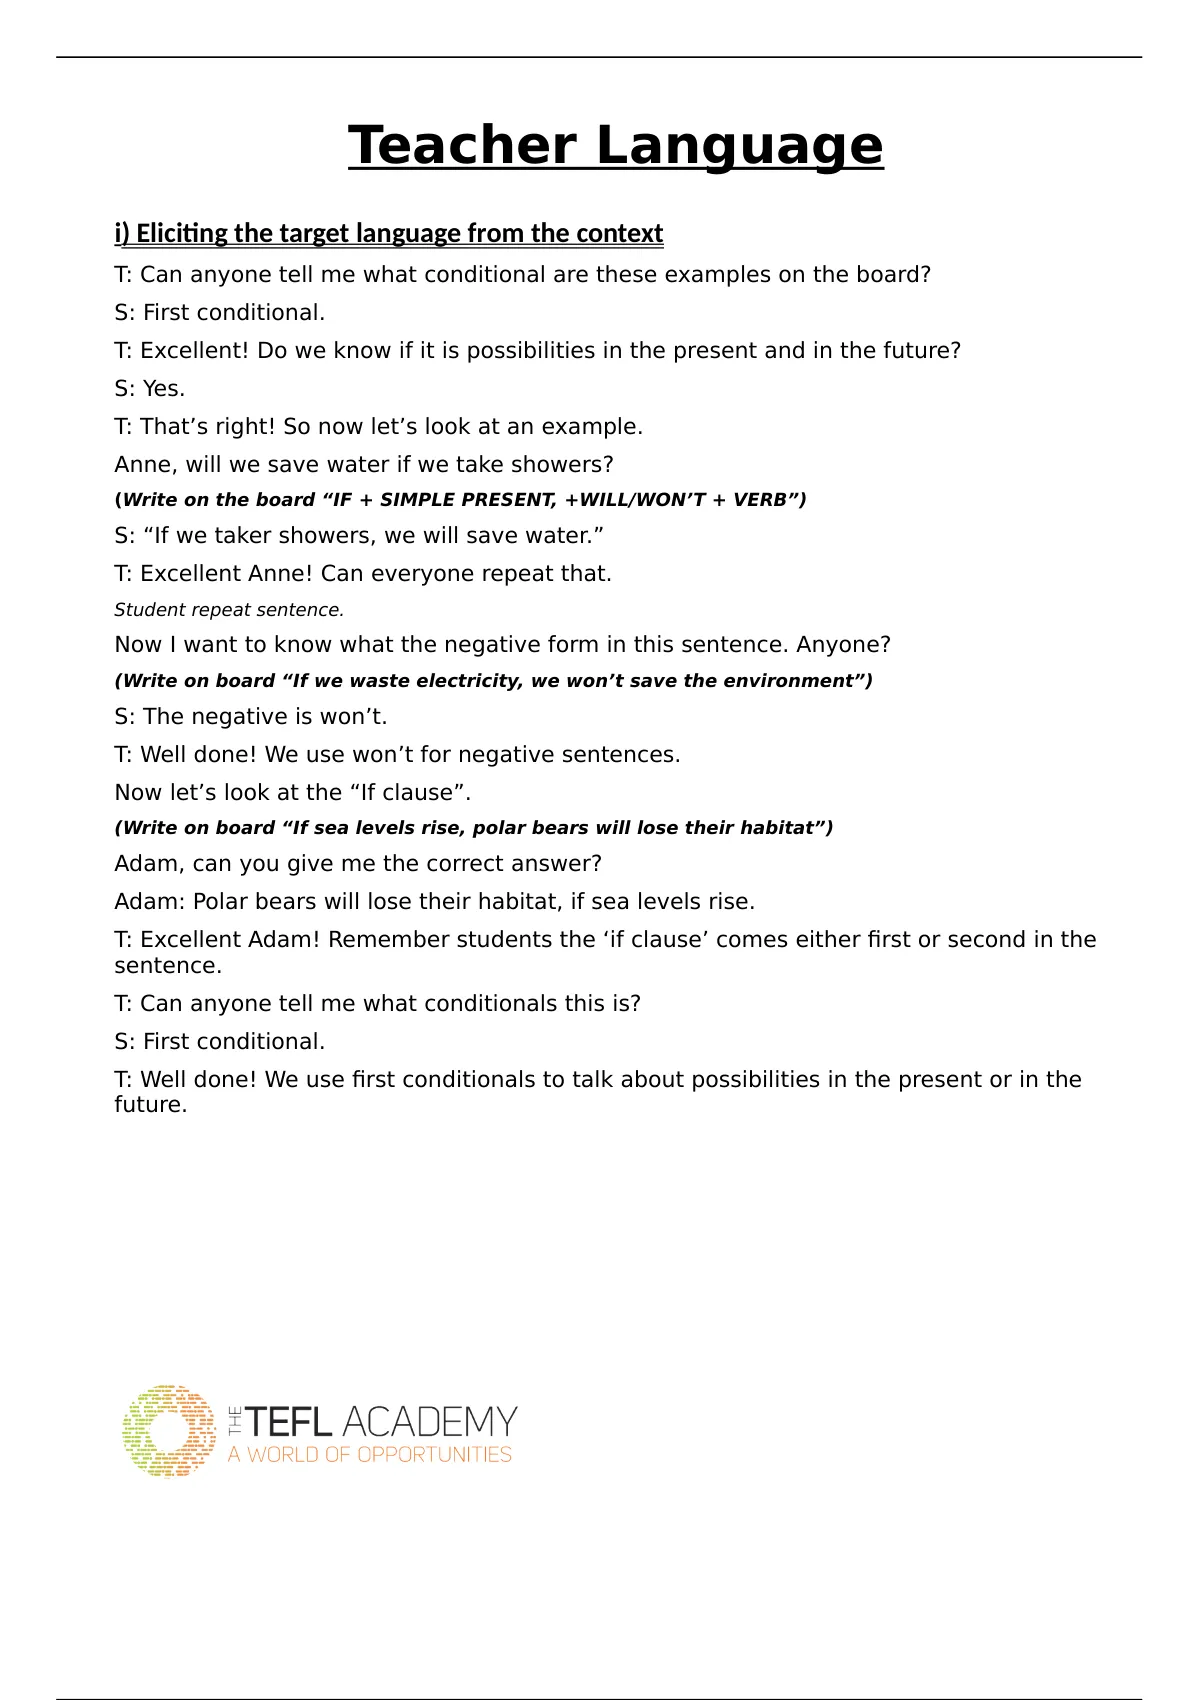 tefl academy assignment 3 help